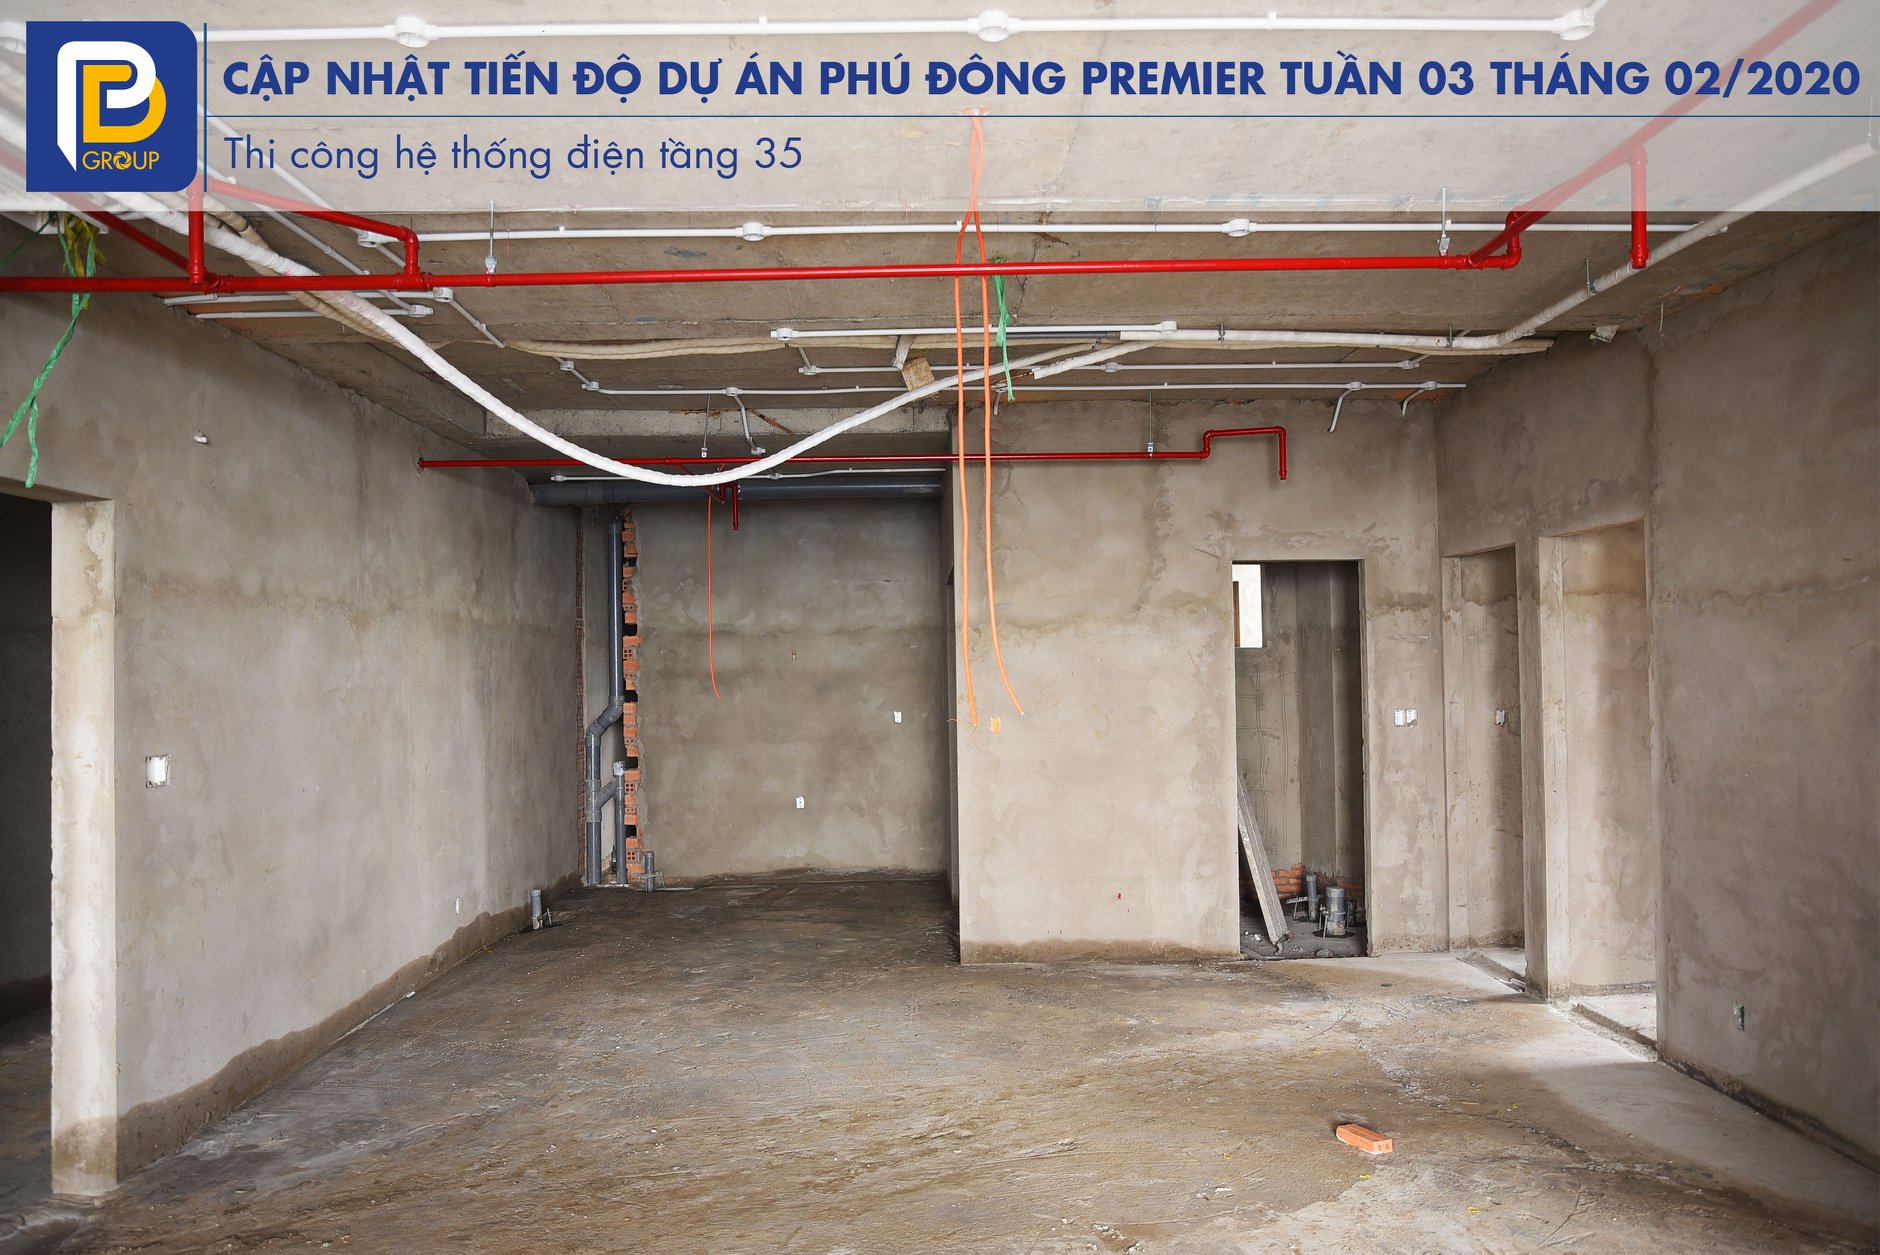 Tiến độ xây dựng căn hộ Phú Đông Premier tháng 02/2020